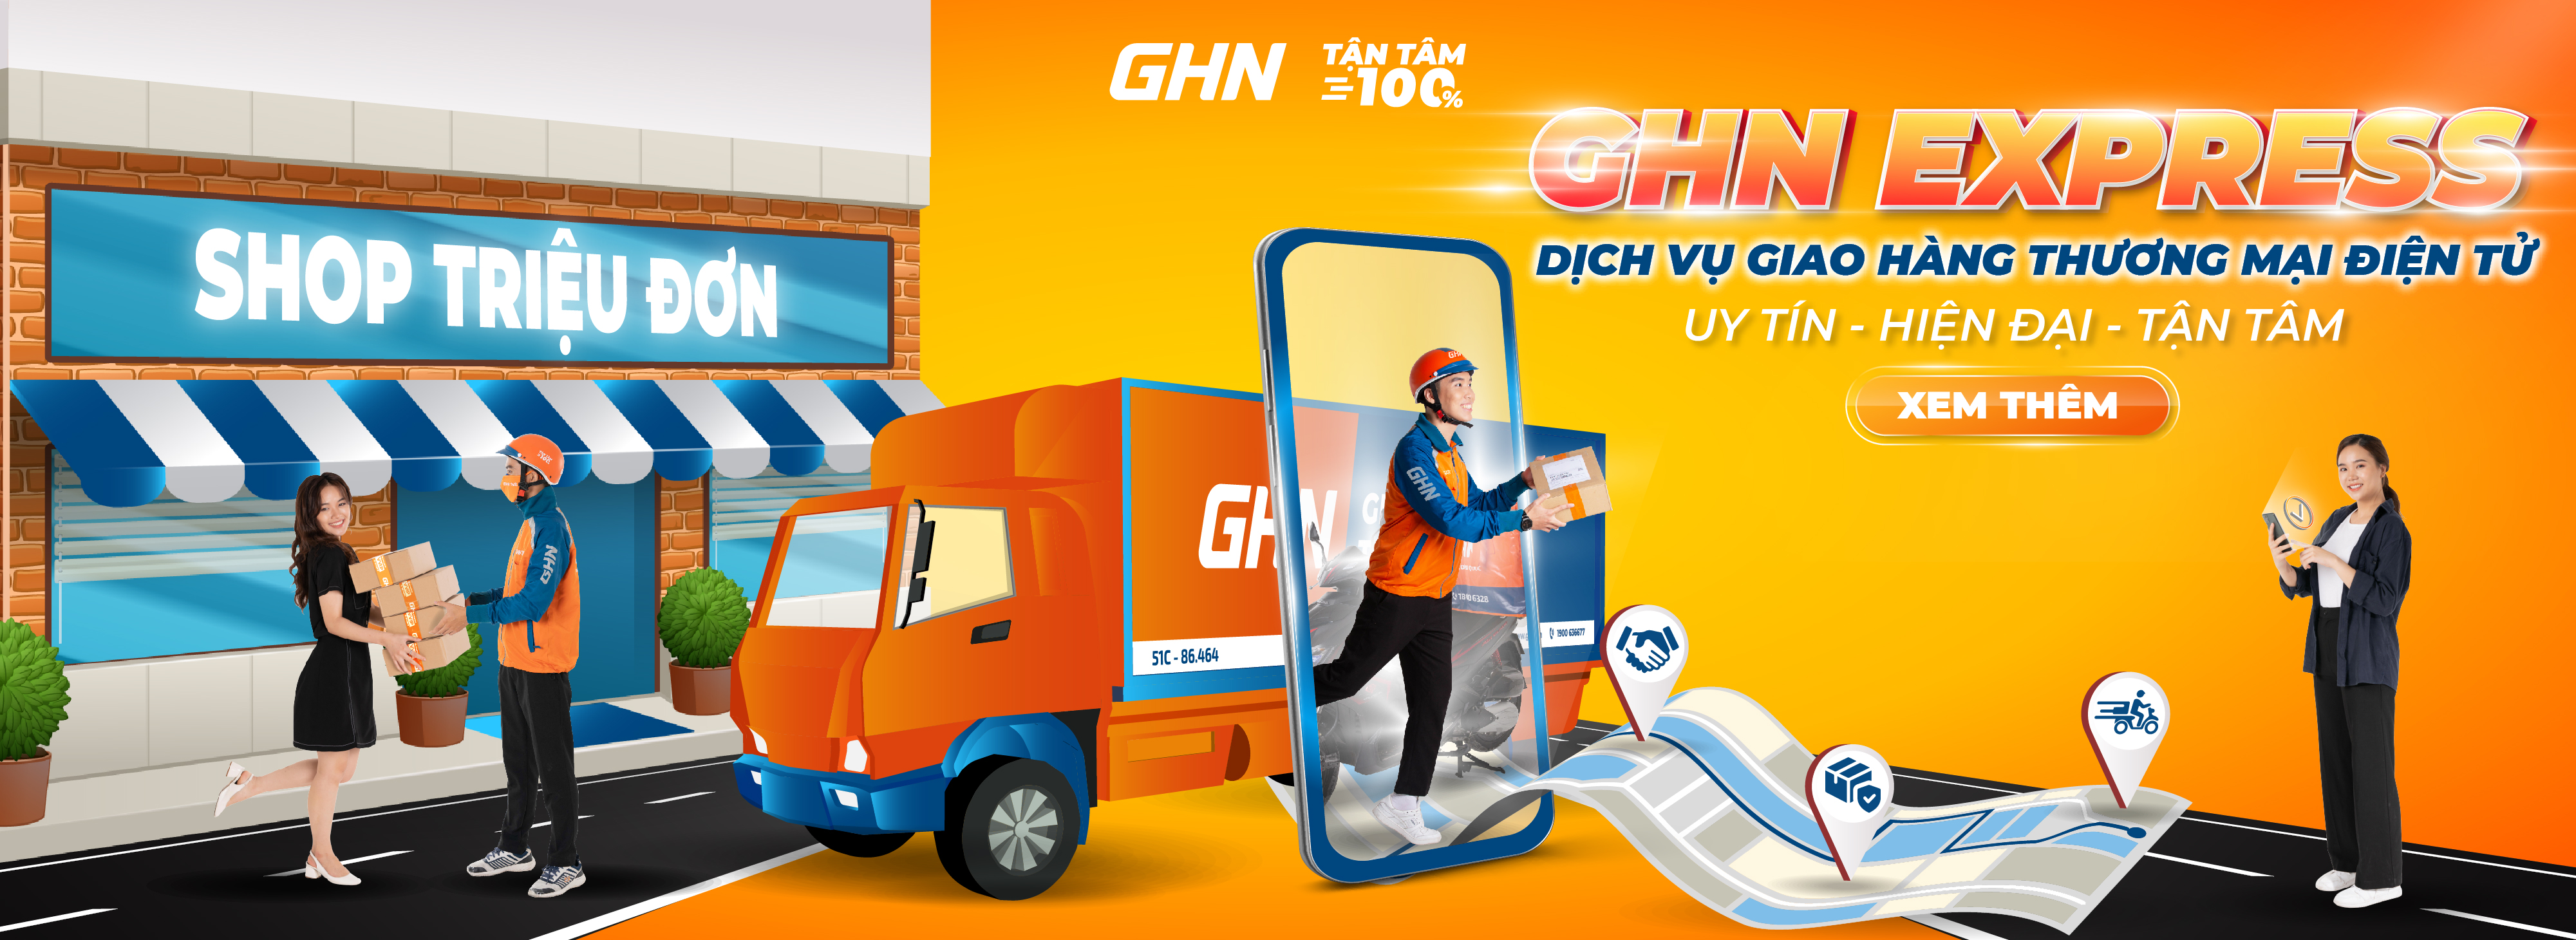 GHN Express - Dịch vụ giao hàng thương mại điện tử